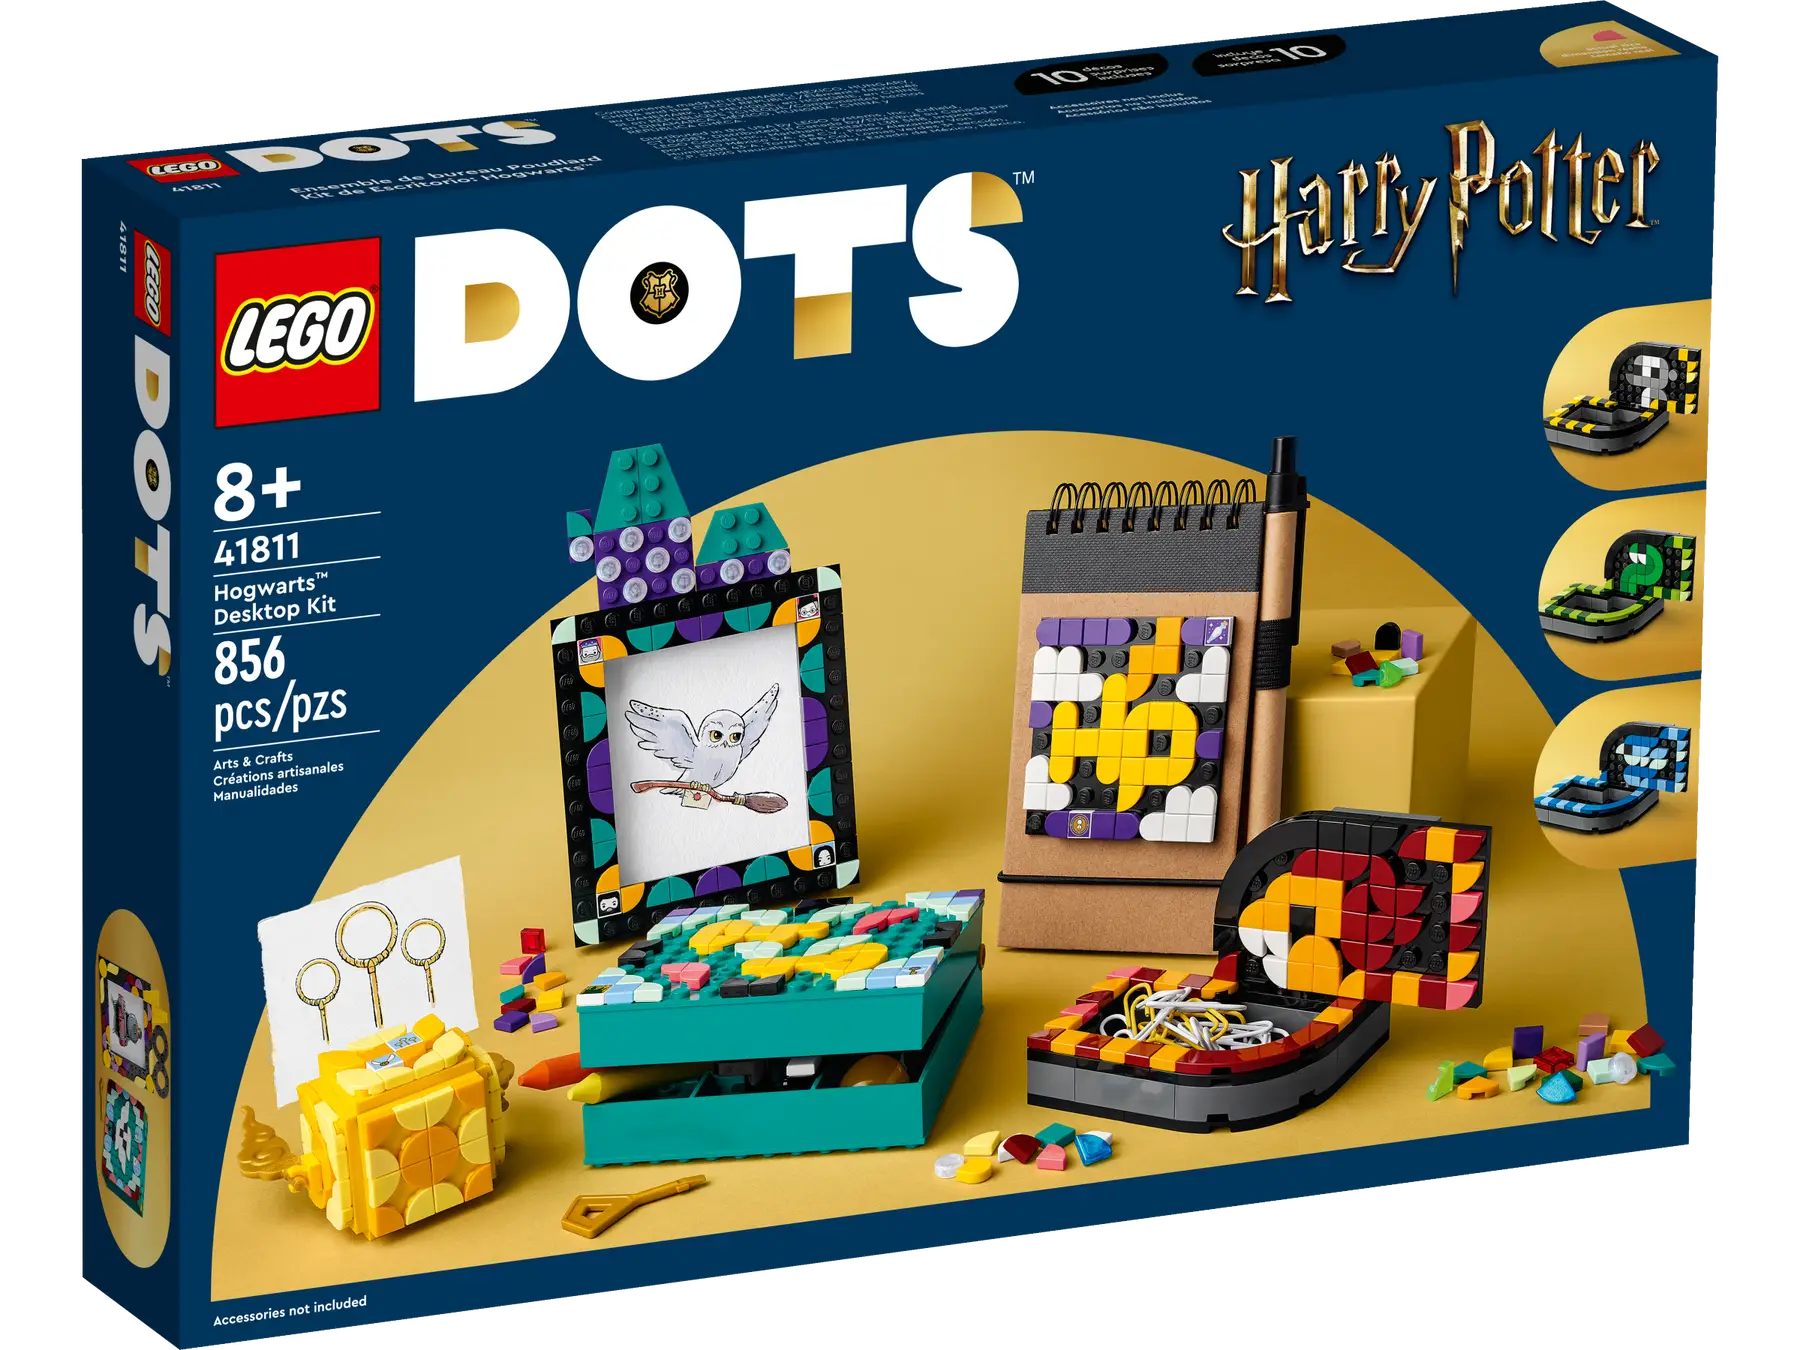 مجموعة مصمم LEGO Dots Hogwarts (TM) 41811، مكعبات ألعاب، هدية، جواهر خيالية، حرف يدوية، أولاد، بنات، للأعمار من 8 سنوات فما فوق